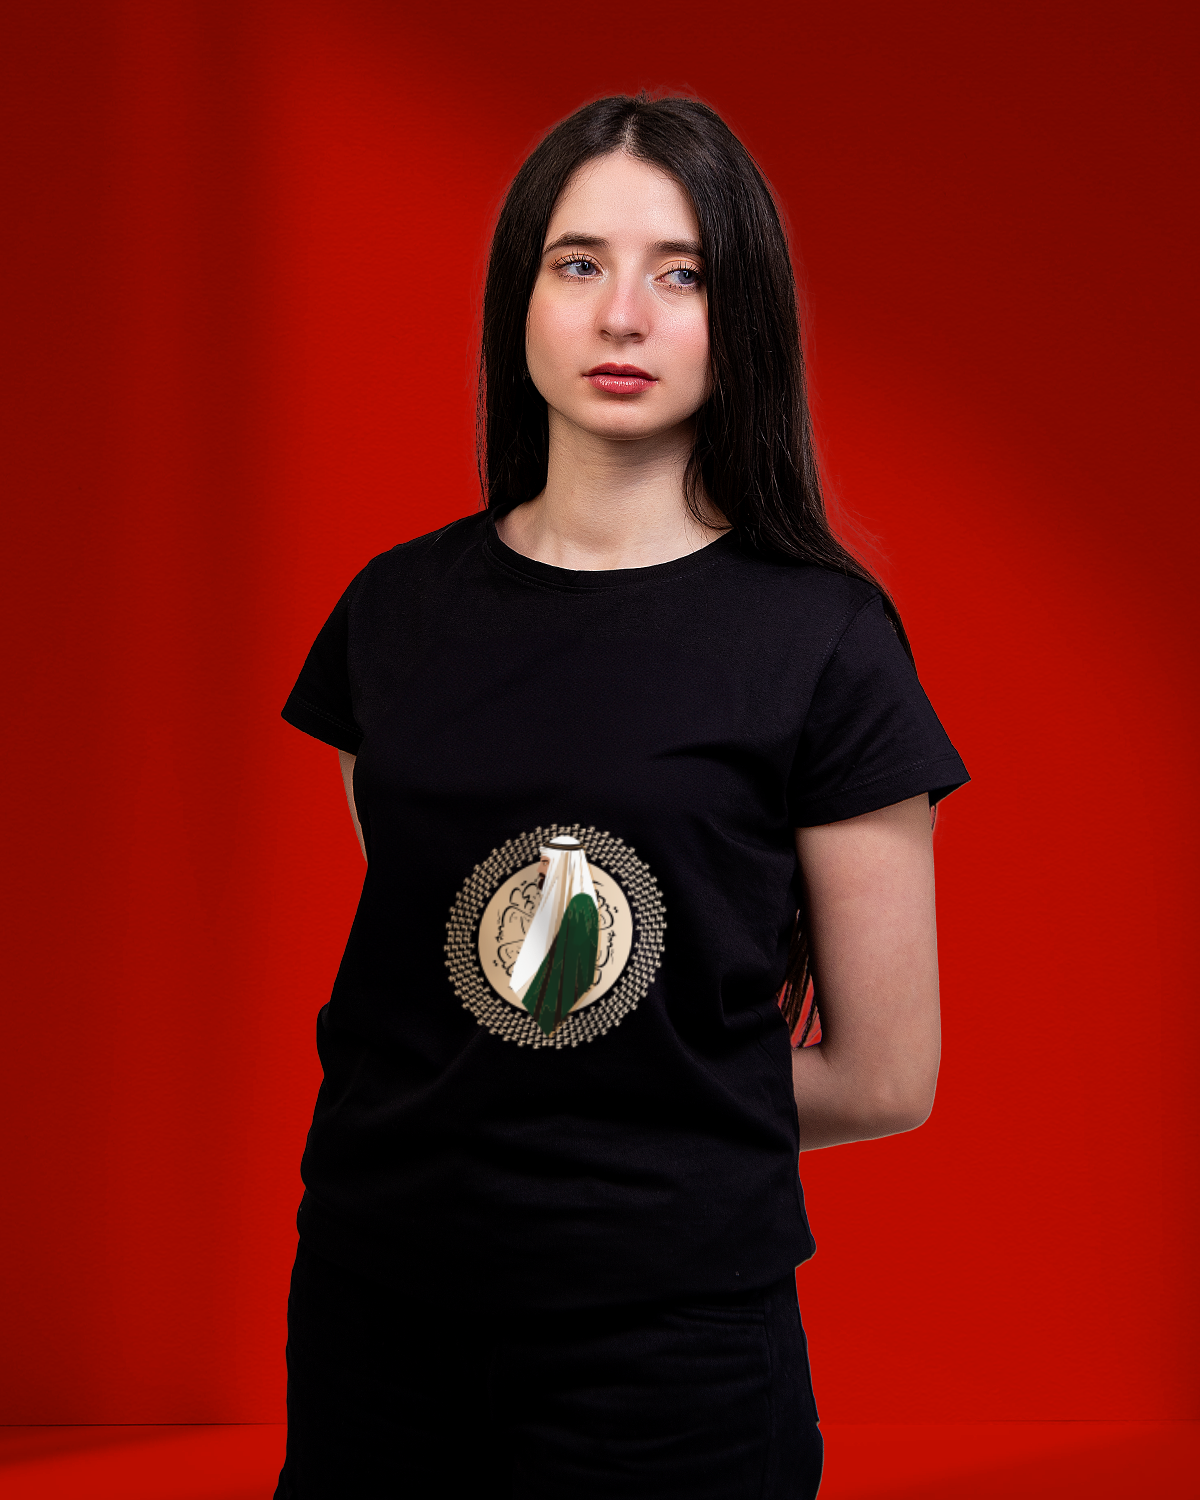 Women's Foundation Day T-shirt (Sarei Lilmajd Walealya')